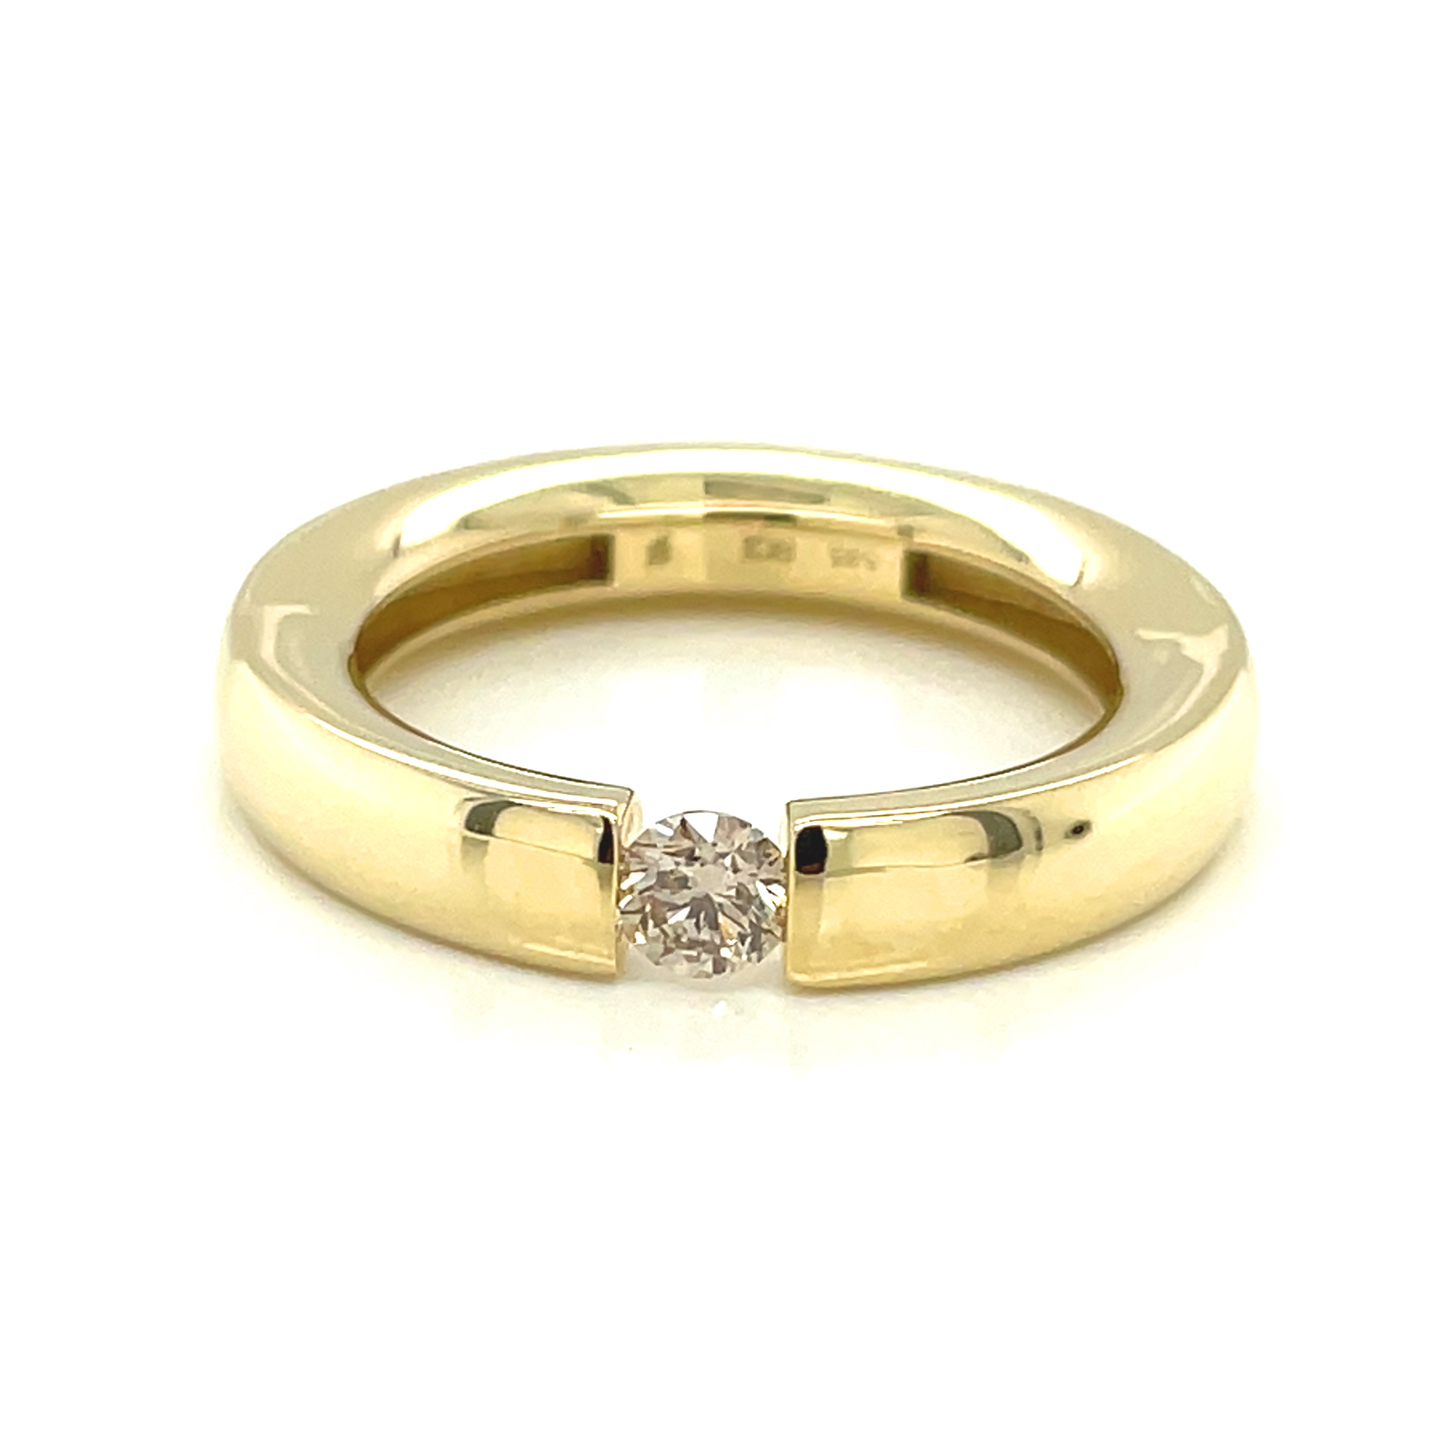 Brillant, champagnerfarben, rund Brillantschliff, ca. 0,23 ct. Edelstein Ring Gelbgold 585/000 Sogni d´oro Facettenreich